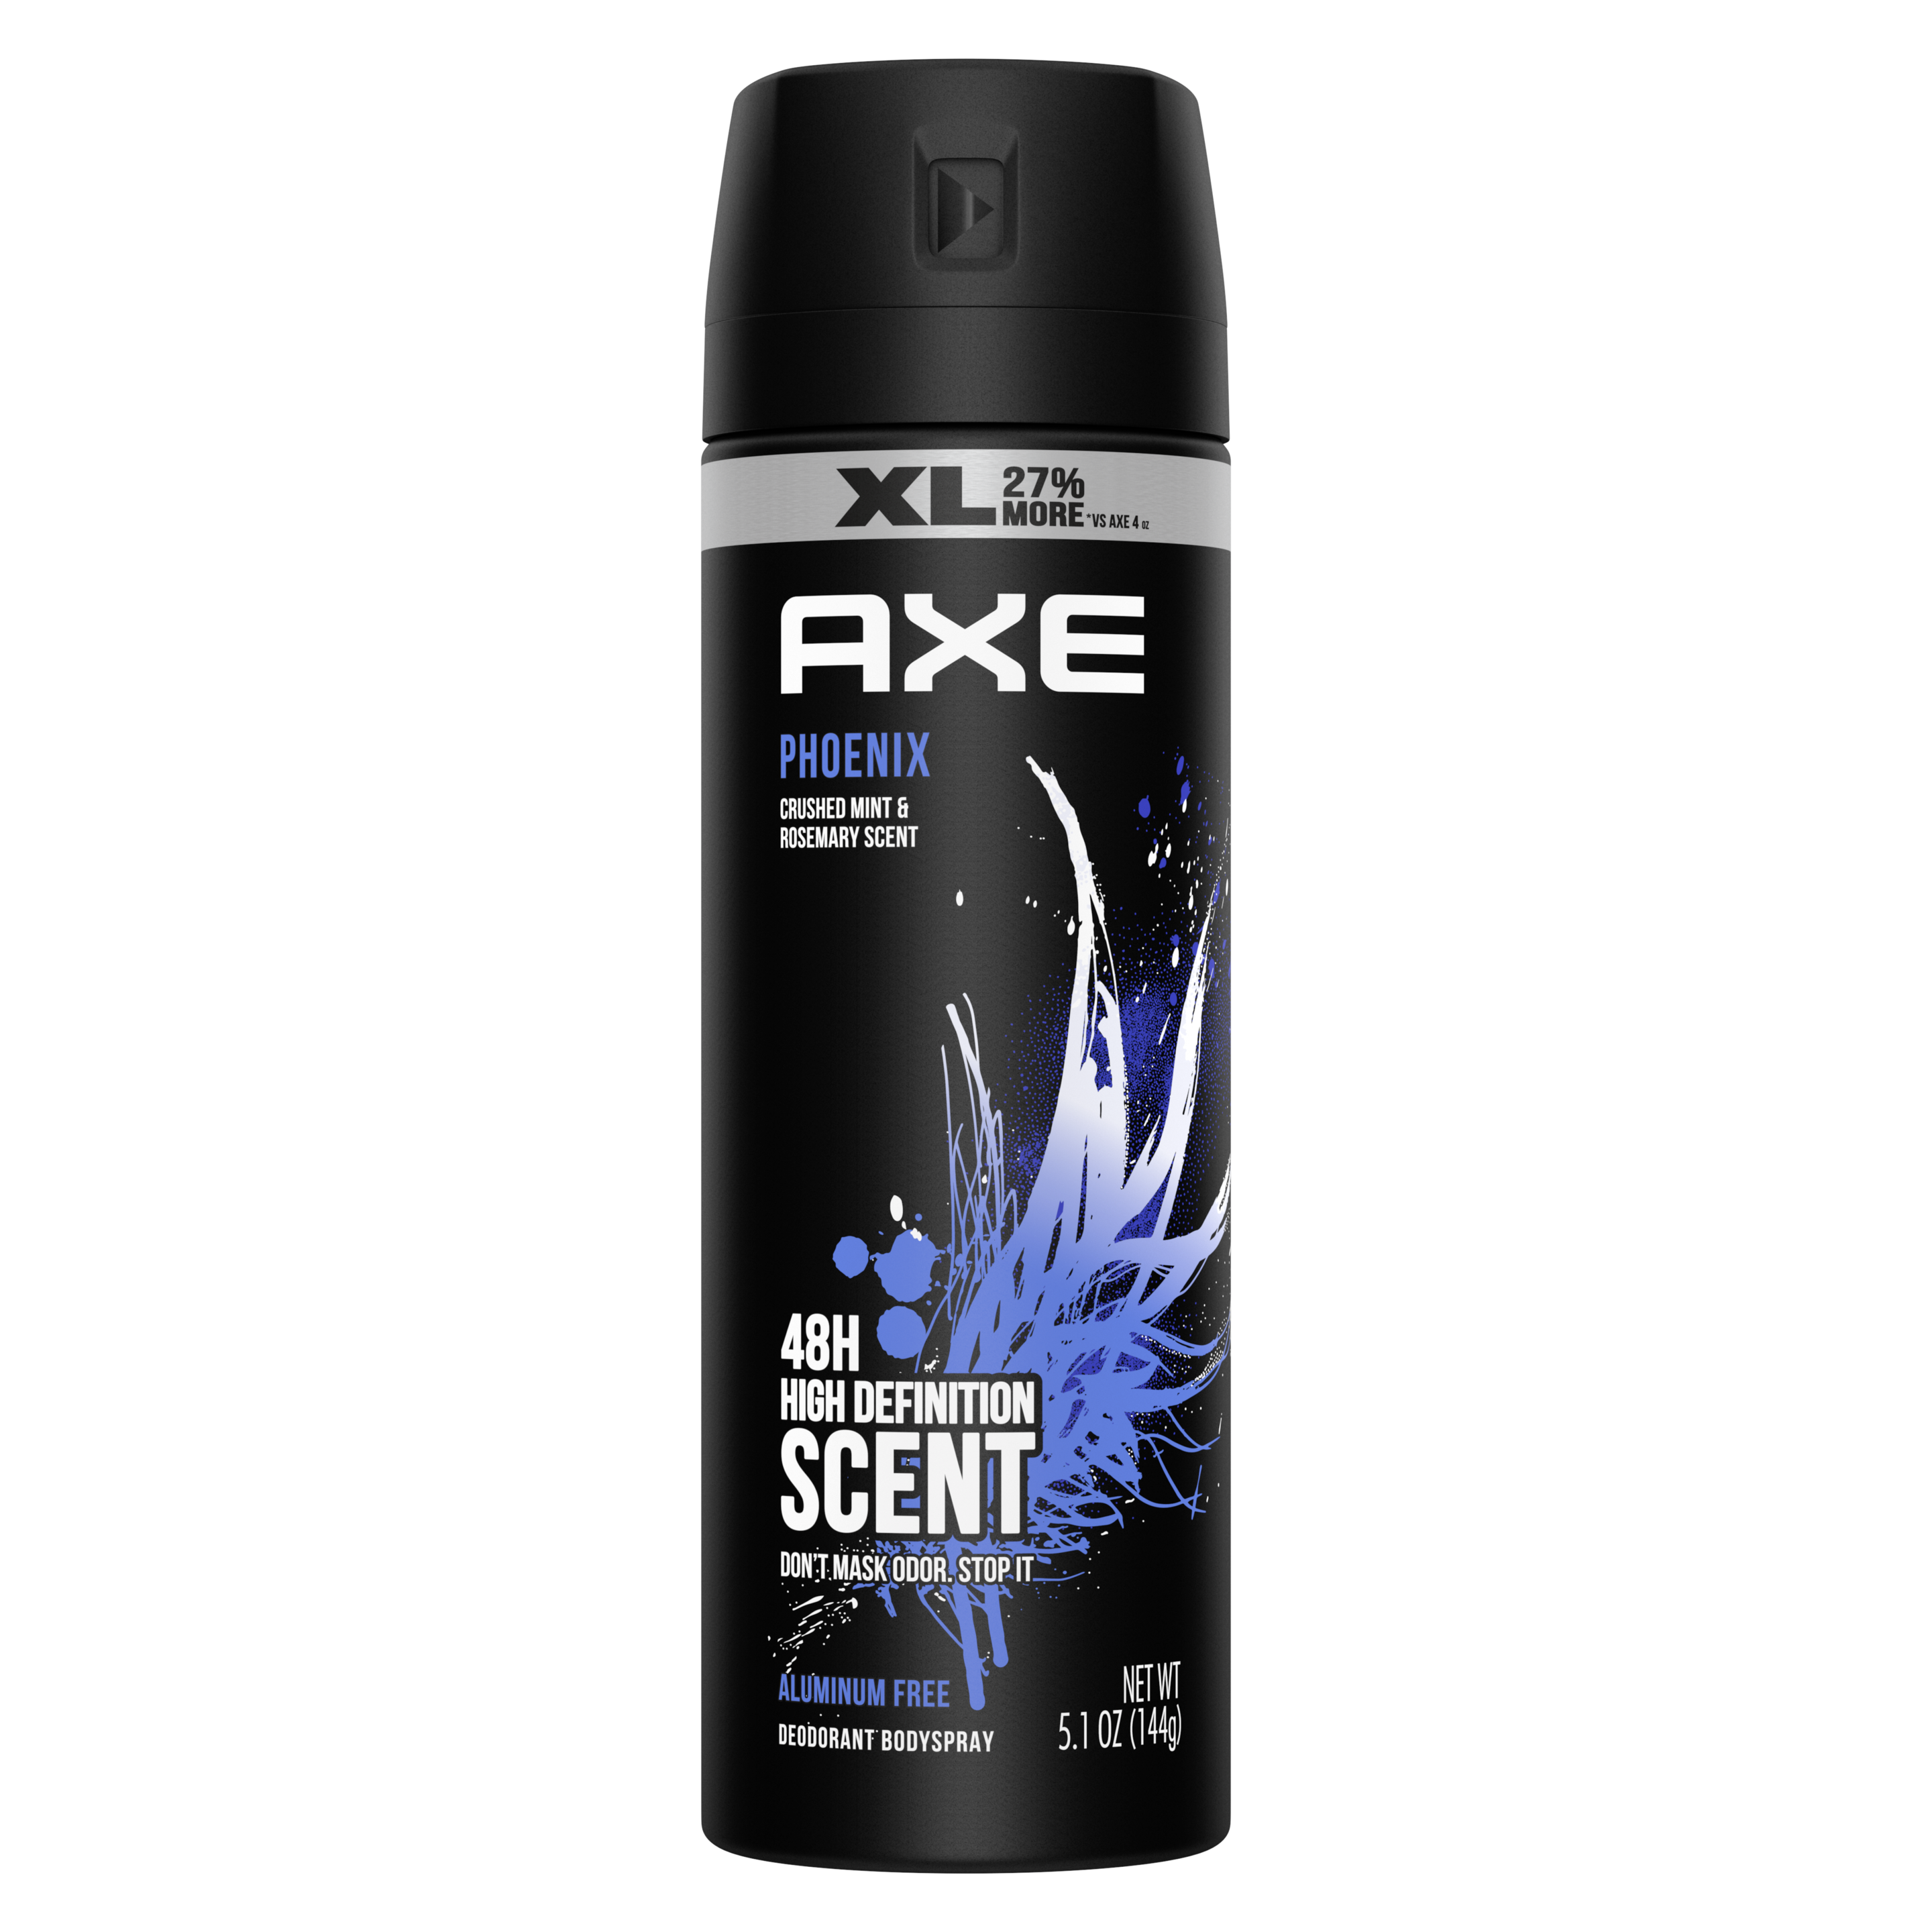 Phoenix XL Deodorant Body Spray